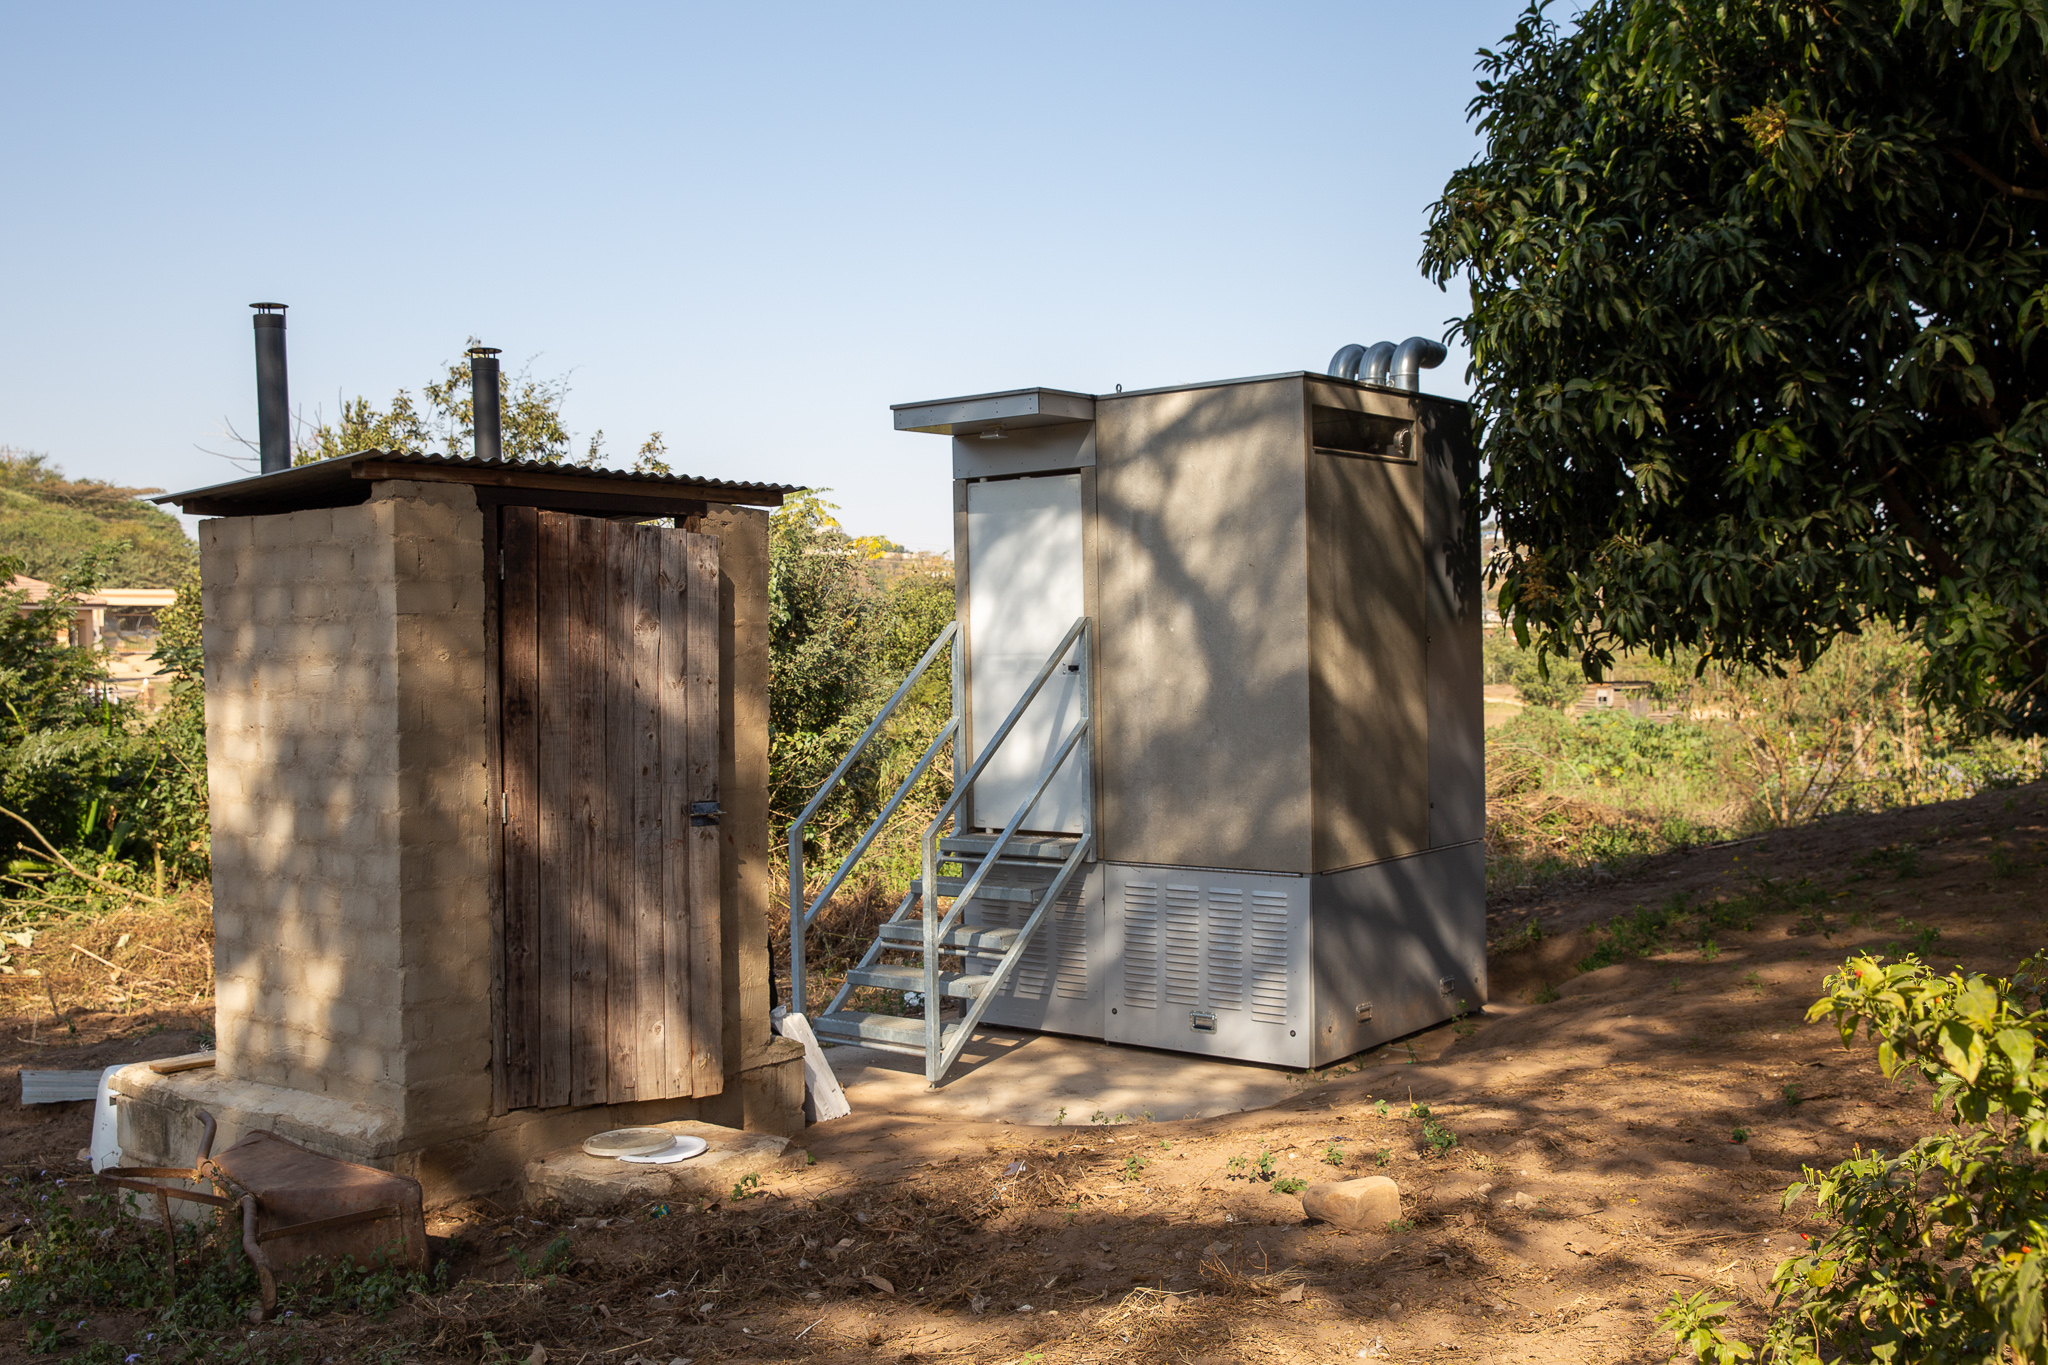  Praxistest einer «Blue Diversion Autarky»-Toilette neben einer bestehenden Trockentoilette mit Urinseparierung (links) in einem Garten in Durban, Südafrika. ©️ Autarky, Eawag